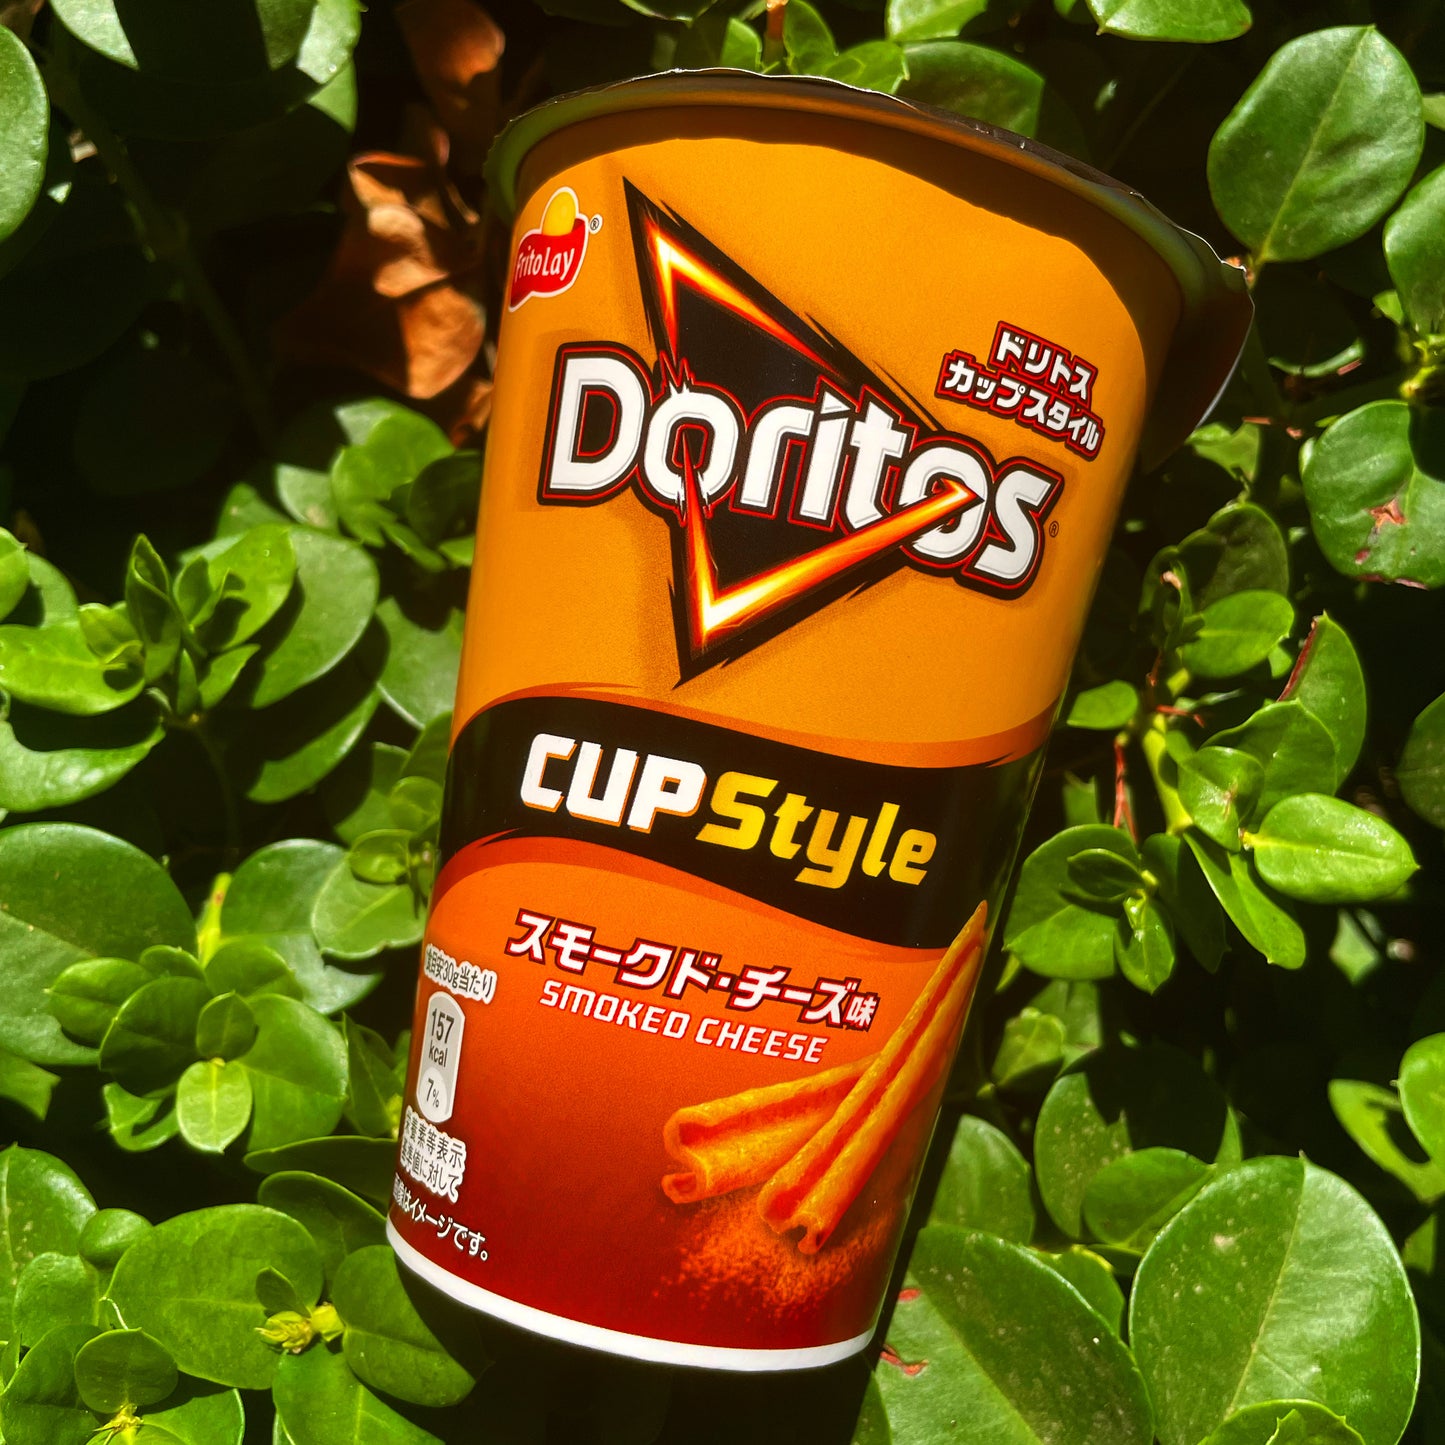 Doritos Smoked Cheese Cup (Japan)